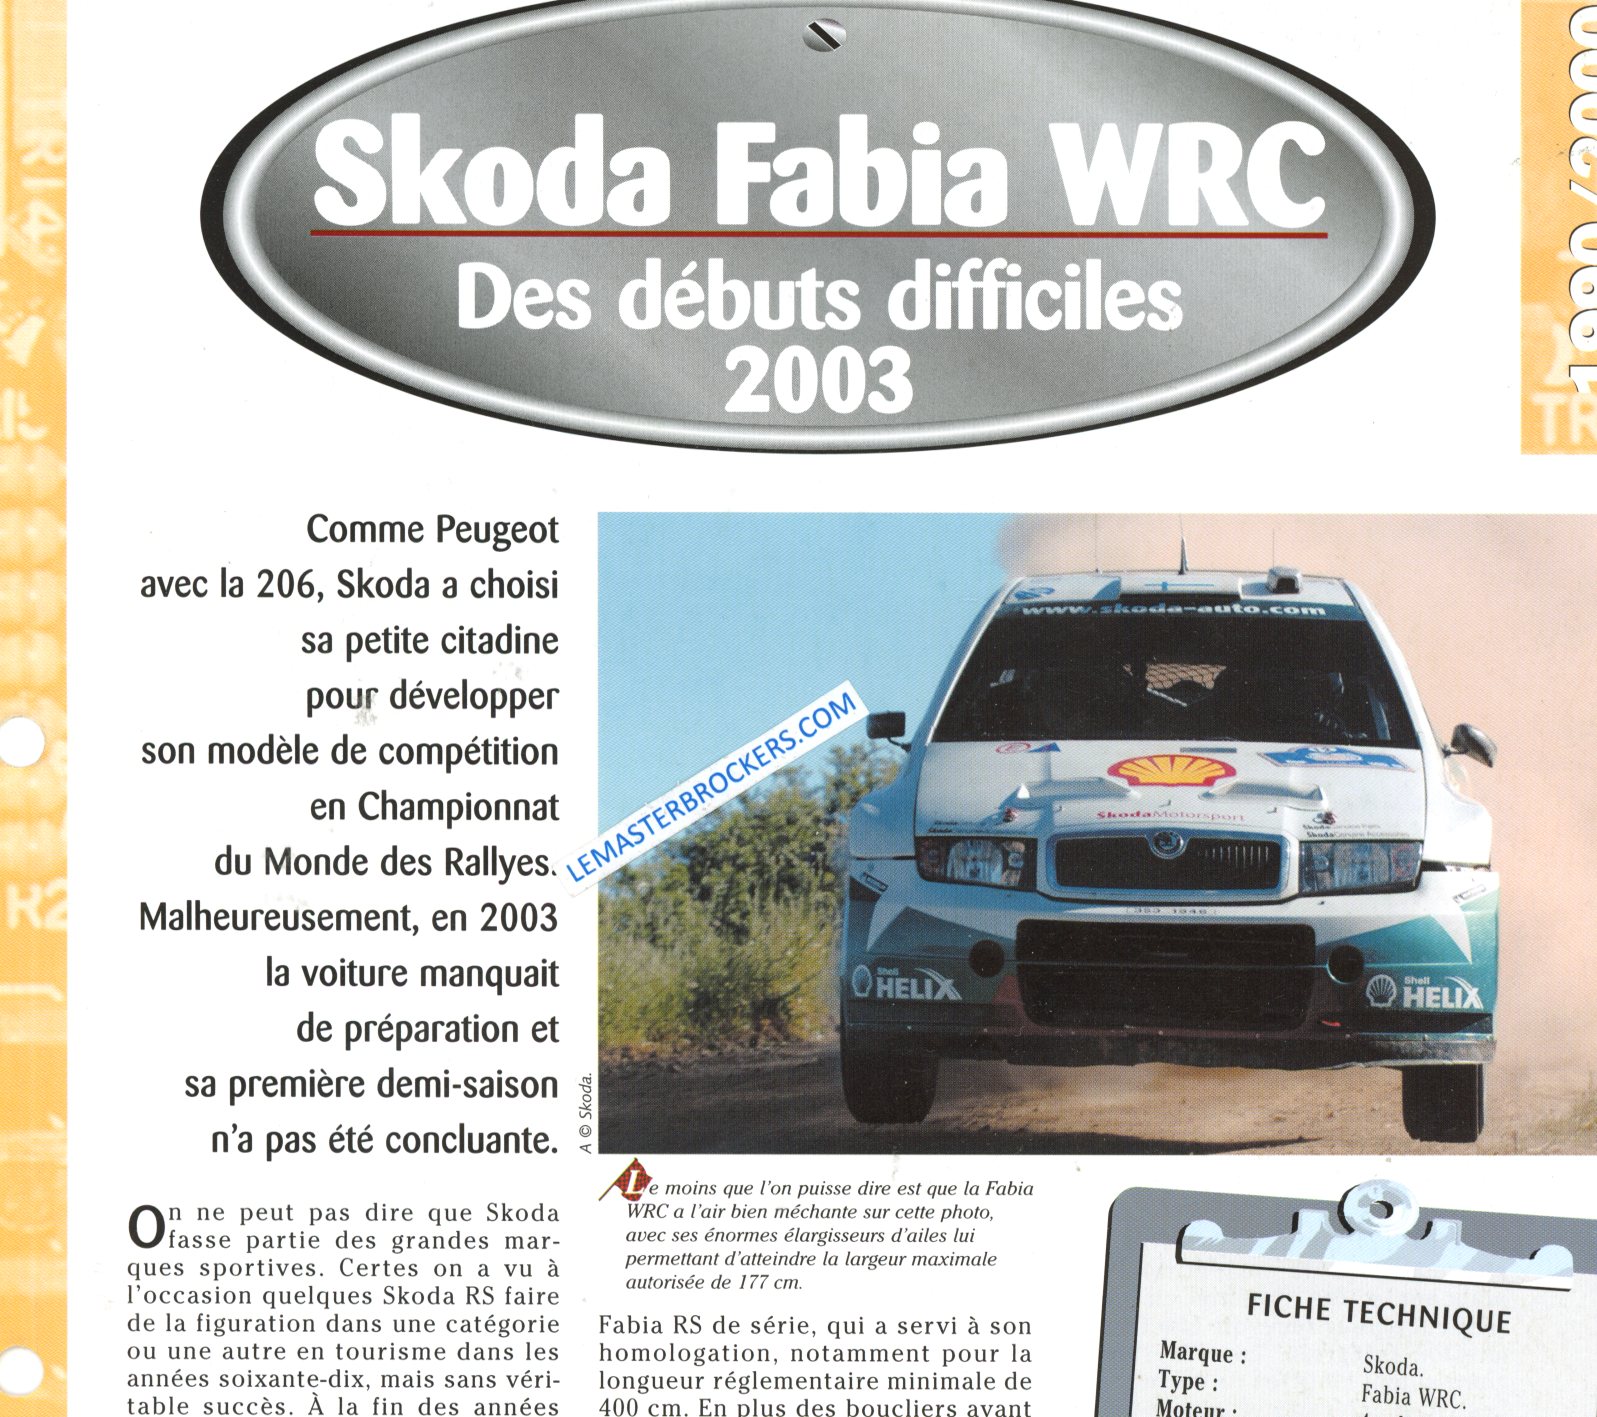 SKODA FABIA WRC 2003 FICHE TECHNIQUE